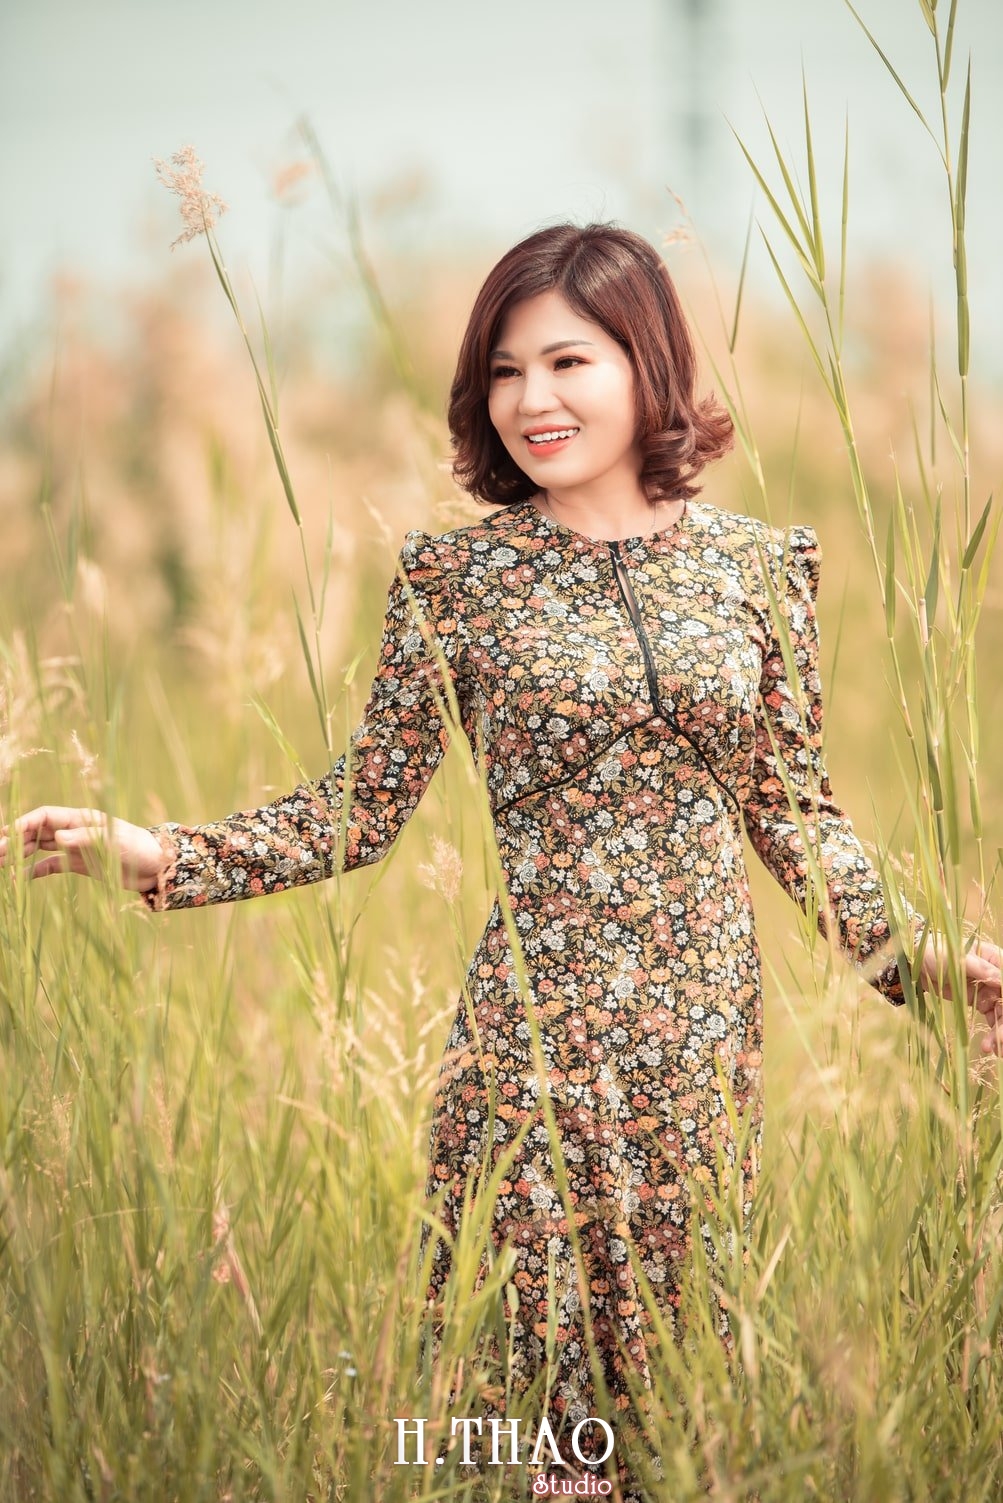 Canh Dong Co Lau 7 - Chụp ảnh với cánh đồng cỏ lau quận 9 tuyệt đẹp - HThao Studio